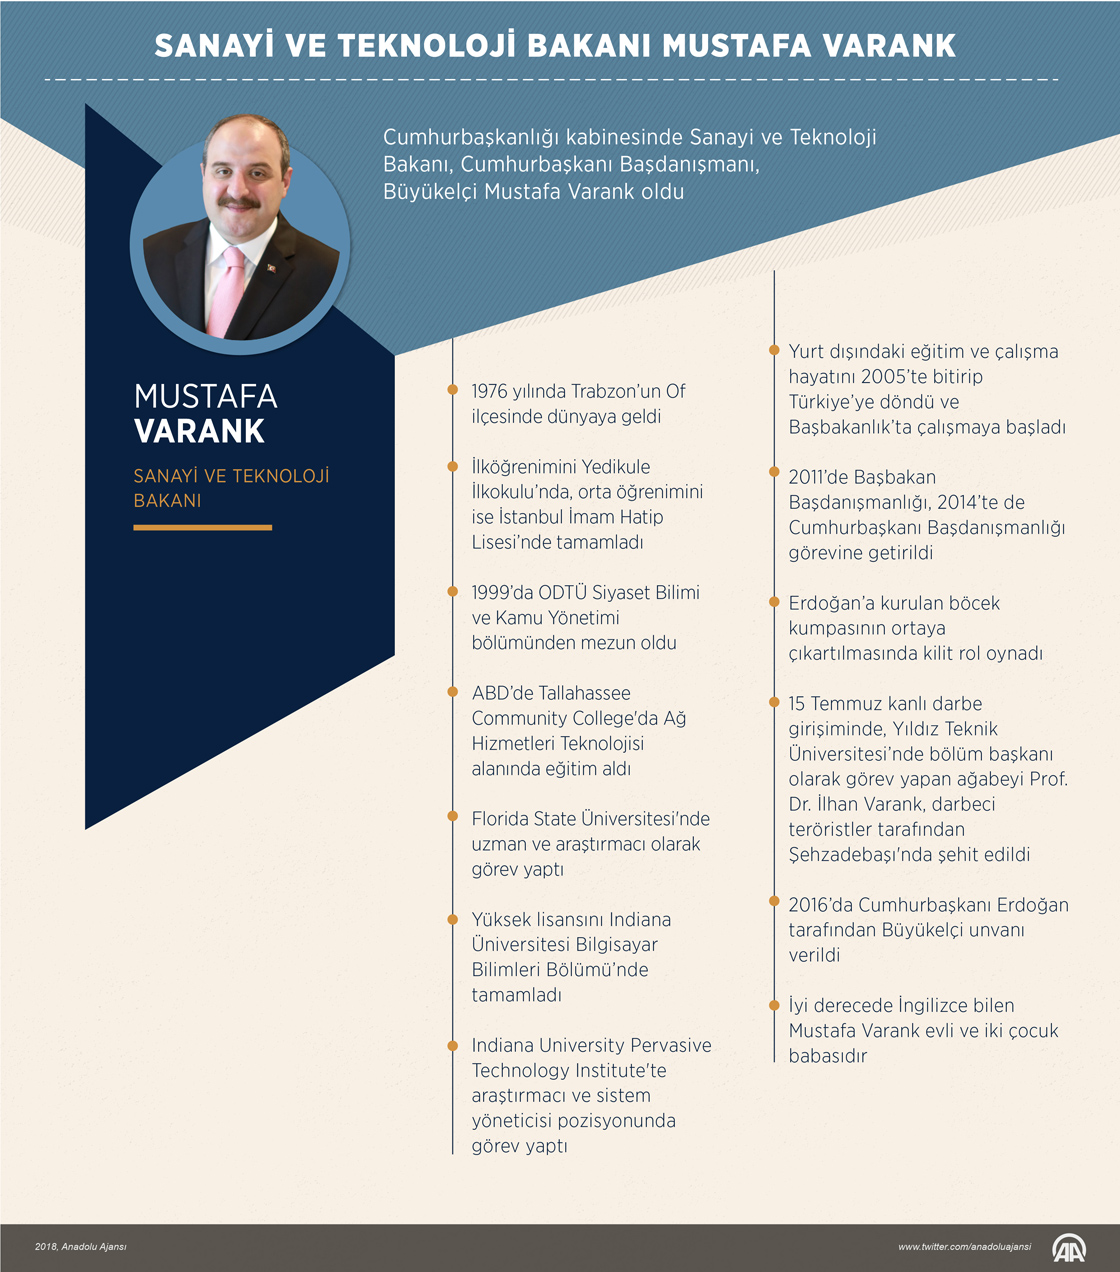 Mustafa Varank Sanayi ve Teknoloji Bakanı oldu